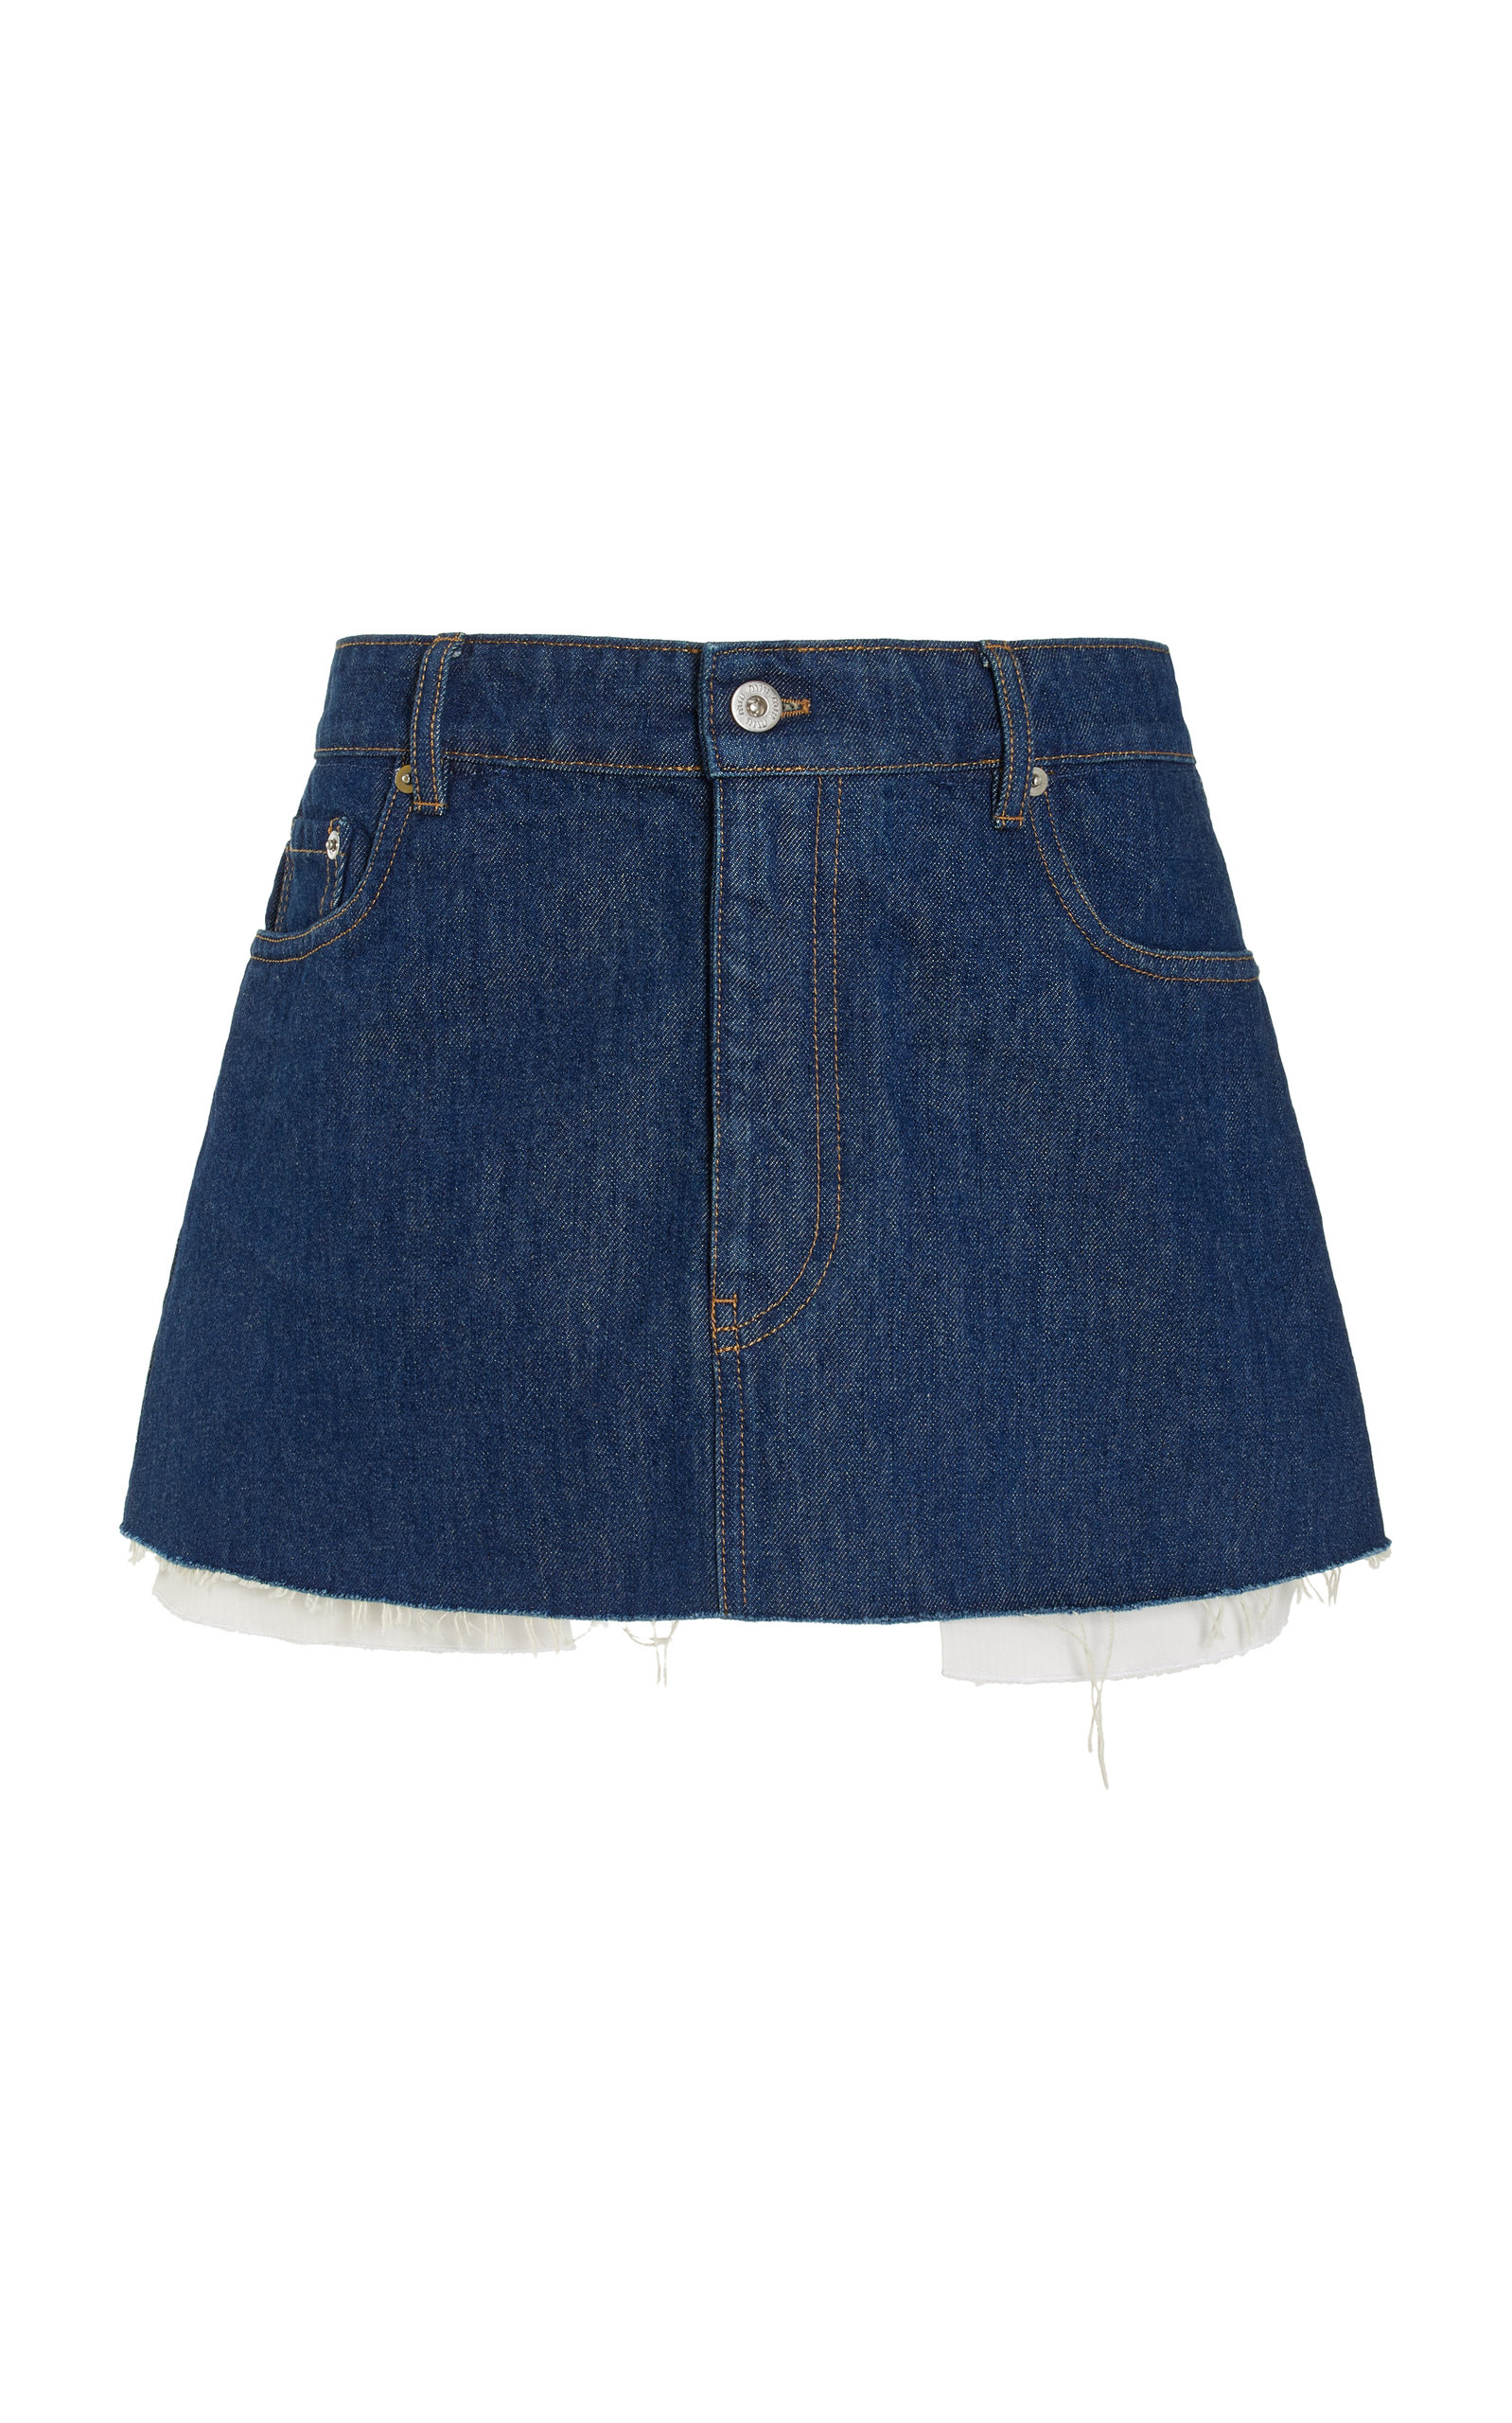 Miu Miu - Raw-Edge Denim Mini Skirt - Medium Wash - IT 40 - Moda Operandi